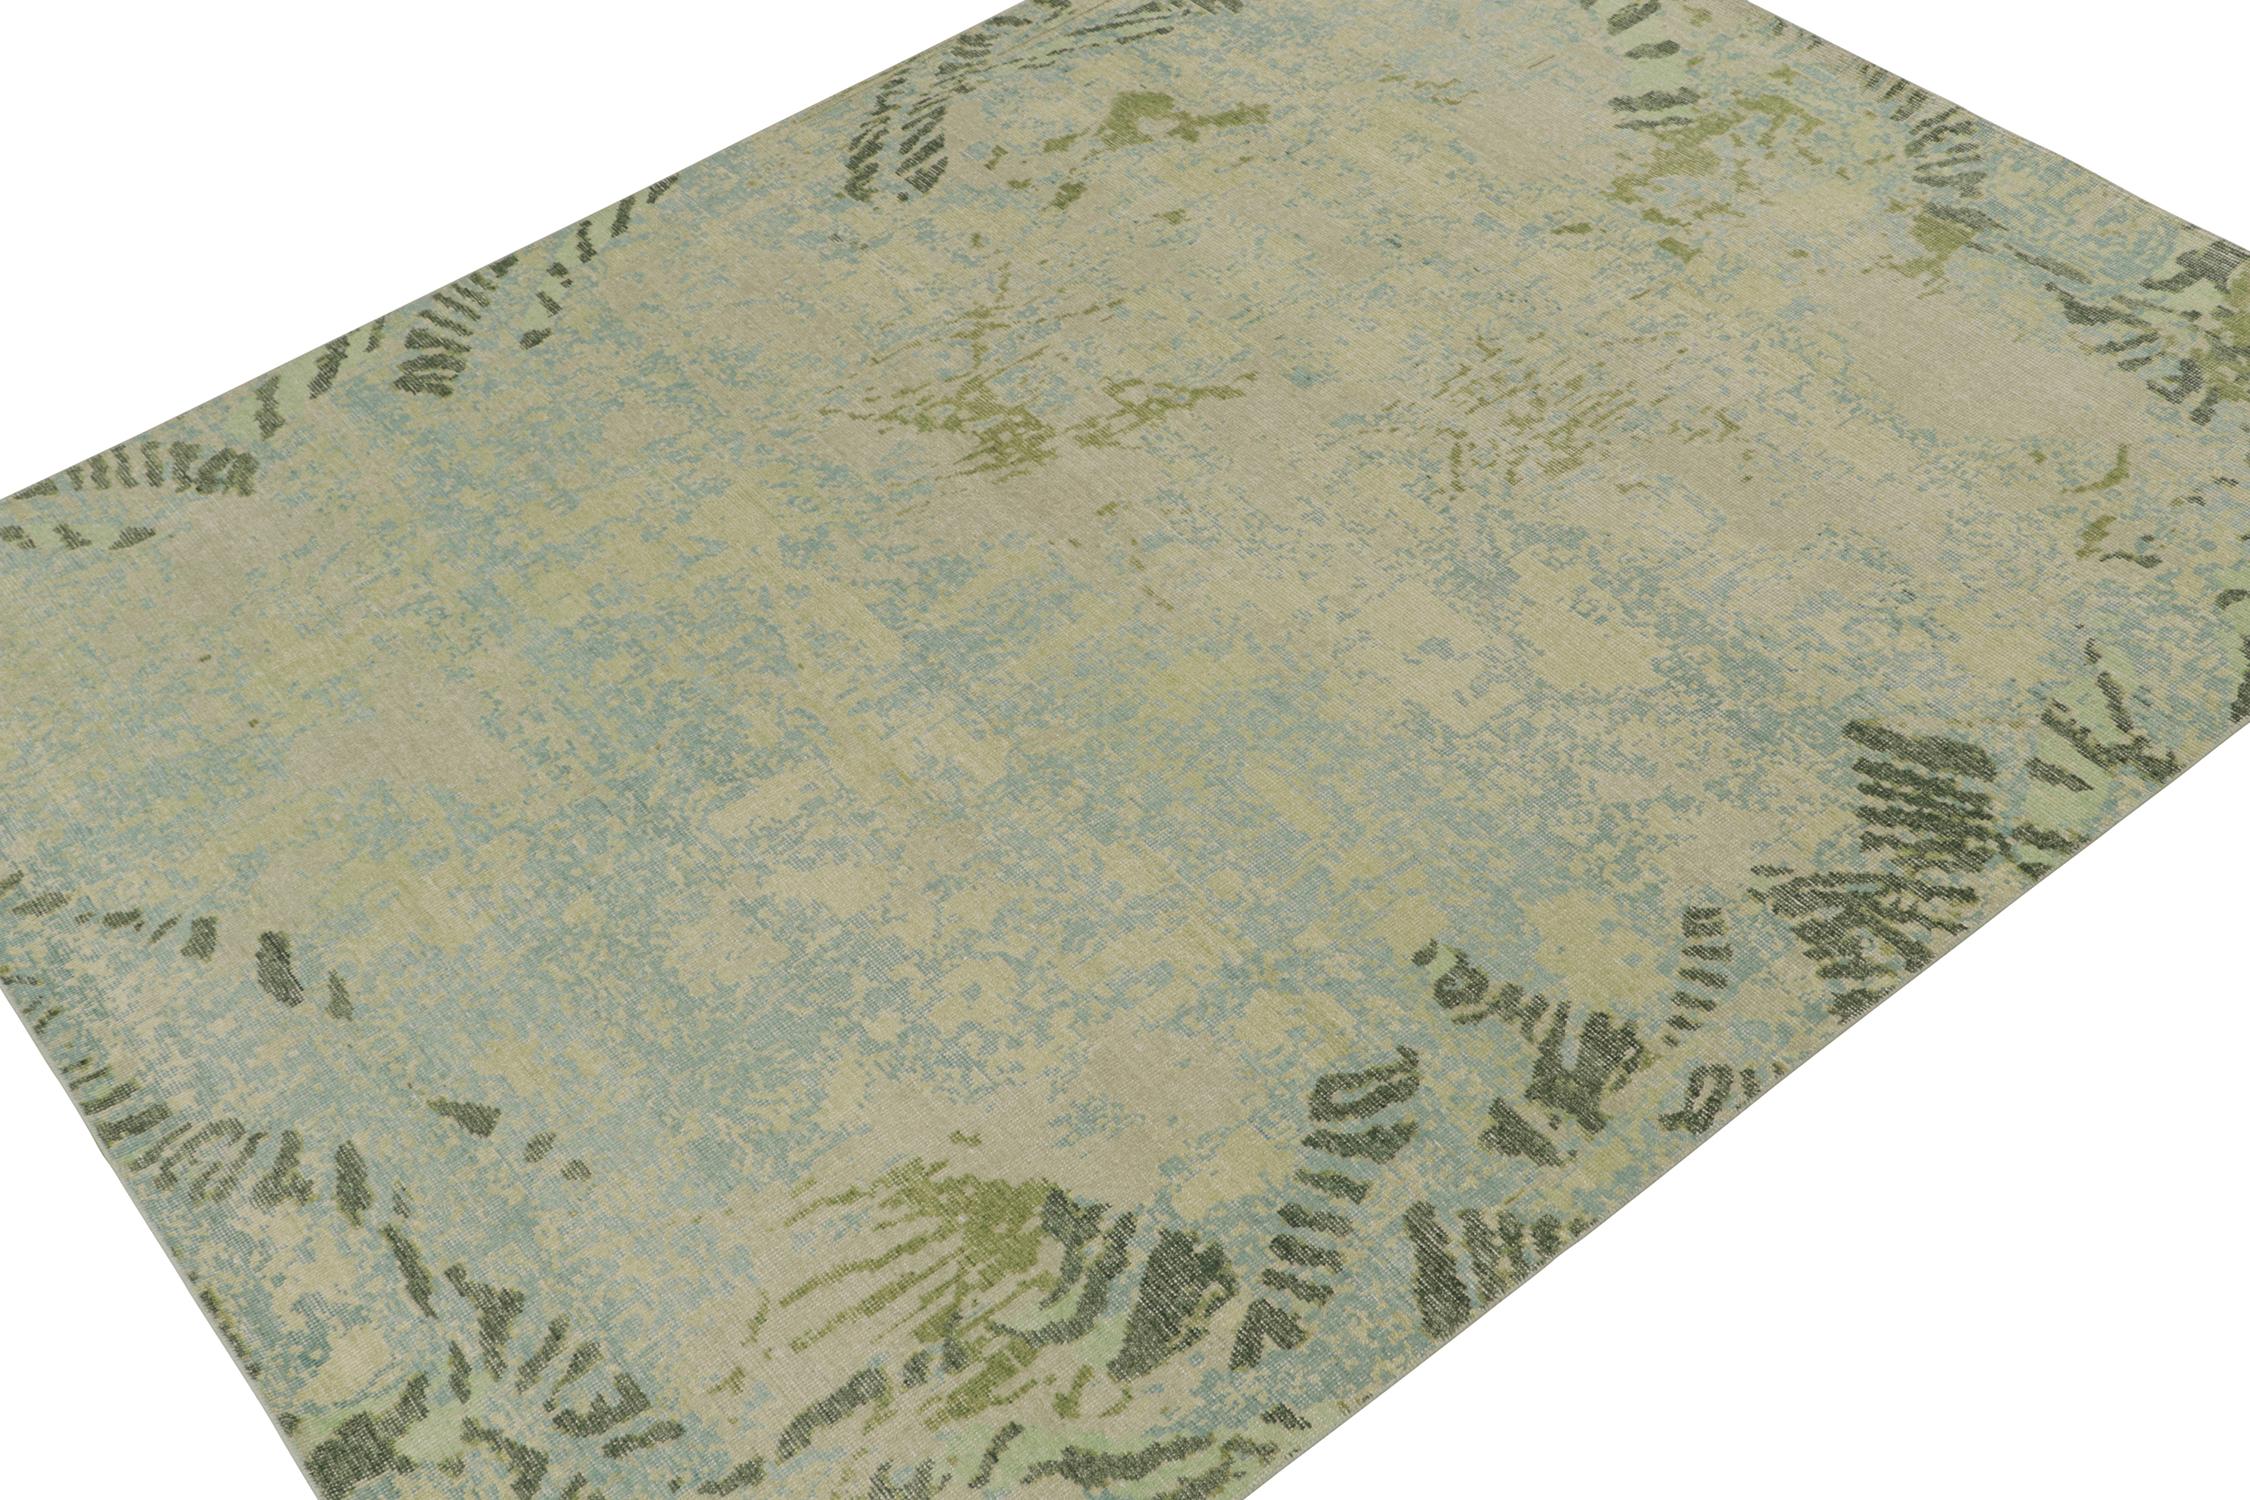 Ce tapis abstrait contemporain 9x12 est un nouvel ajout à la Collection Homage de Rug & Kilim. Noué à la main en laine et en coton.

Plus loin dans le Design :

Ce design évoque une harmonie ludique de couleurs bleu ciel, argent et vert chartreuse